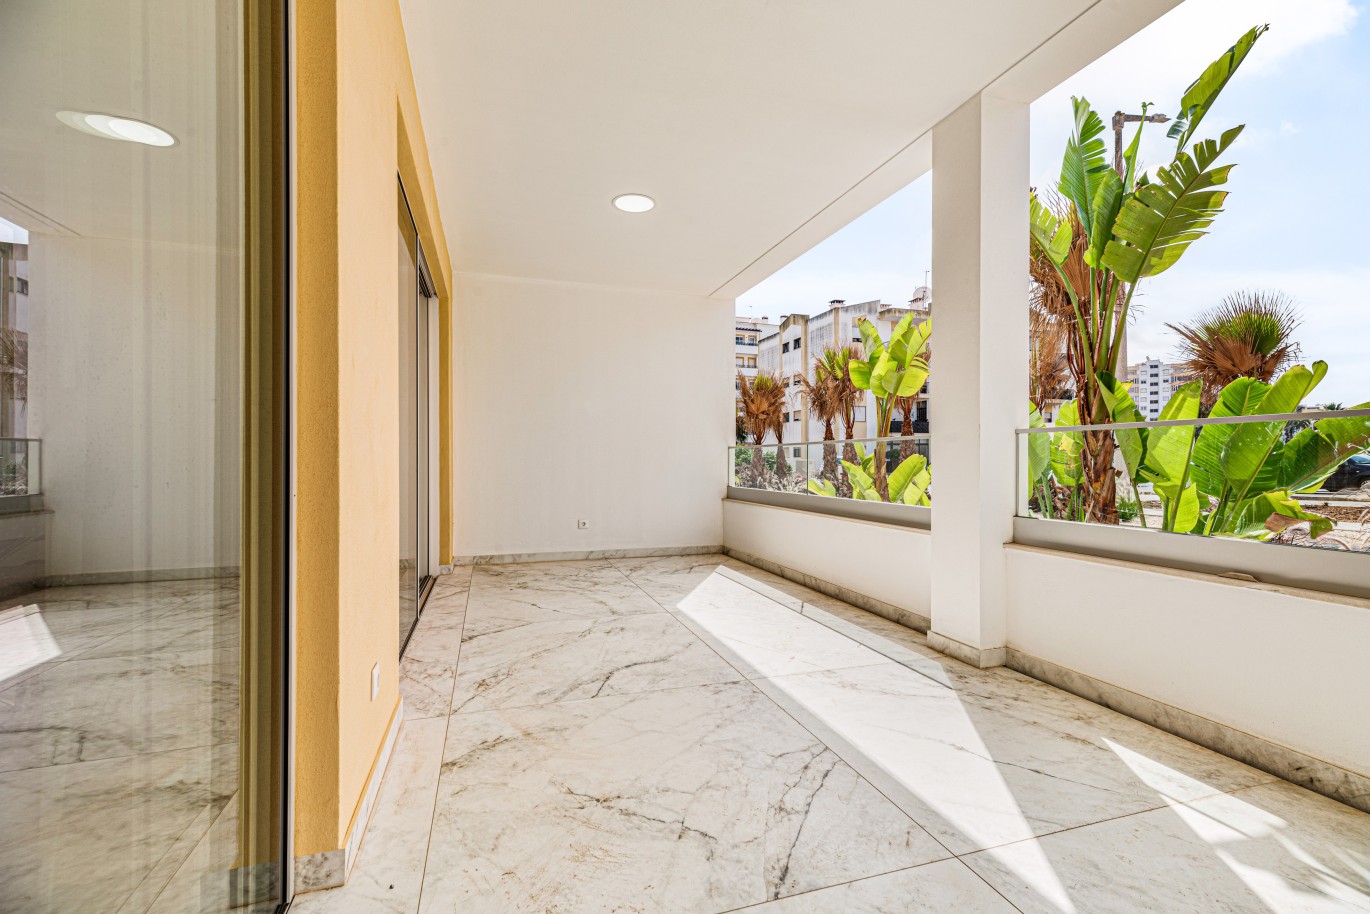 Apartamento, com terraço, para venda, em Lagos, Algarve_238589